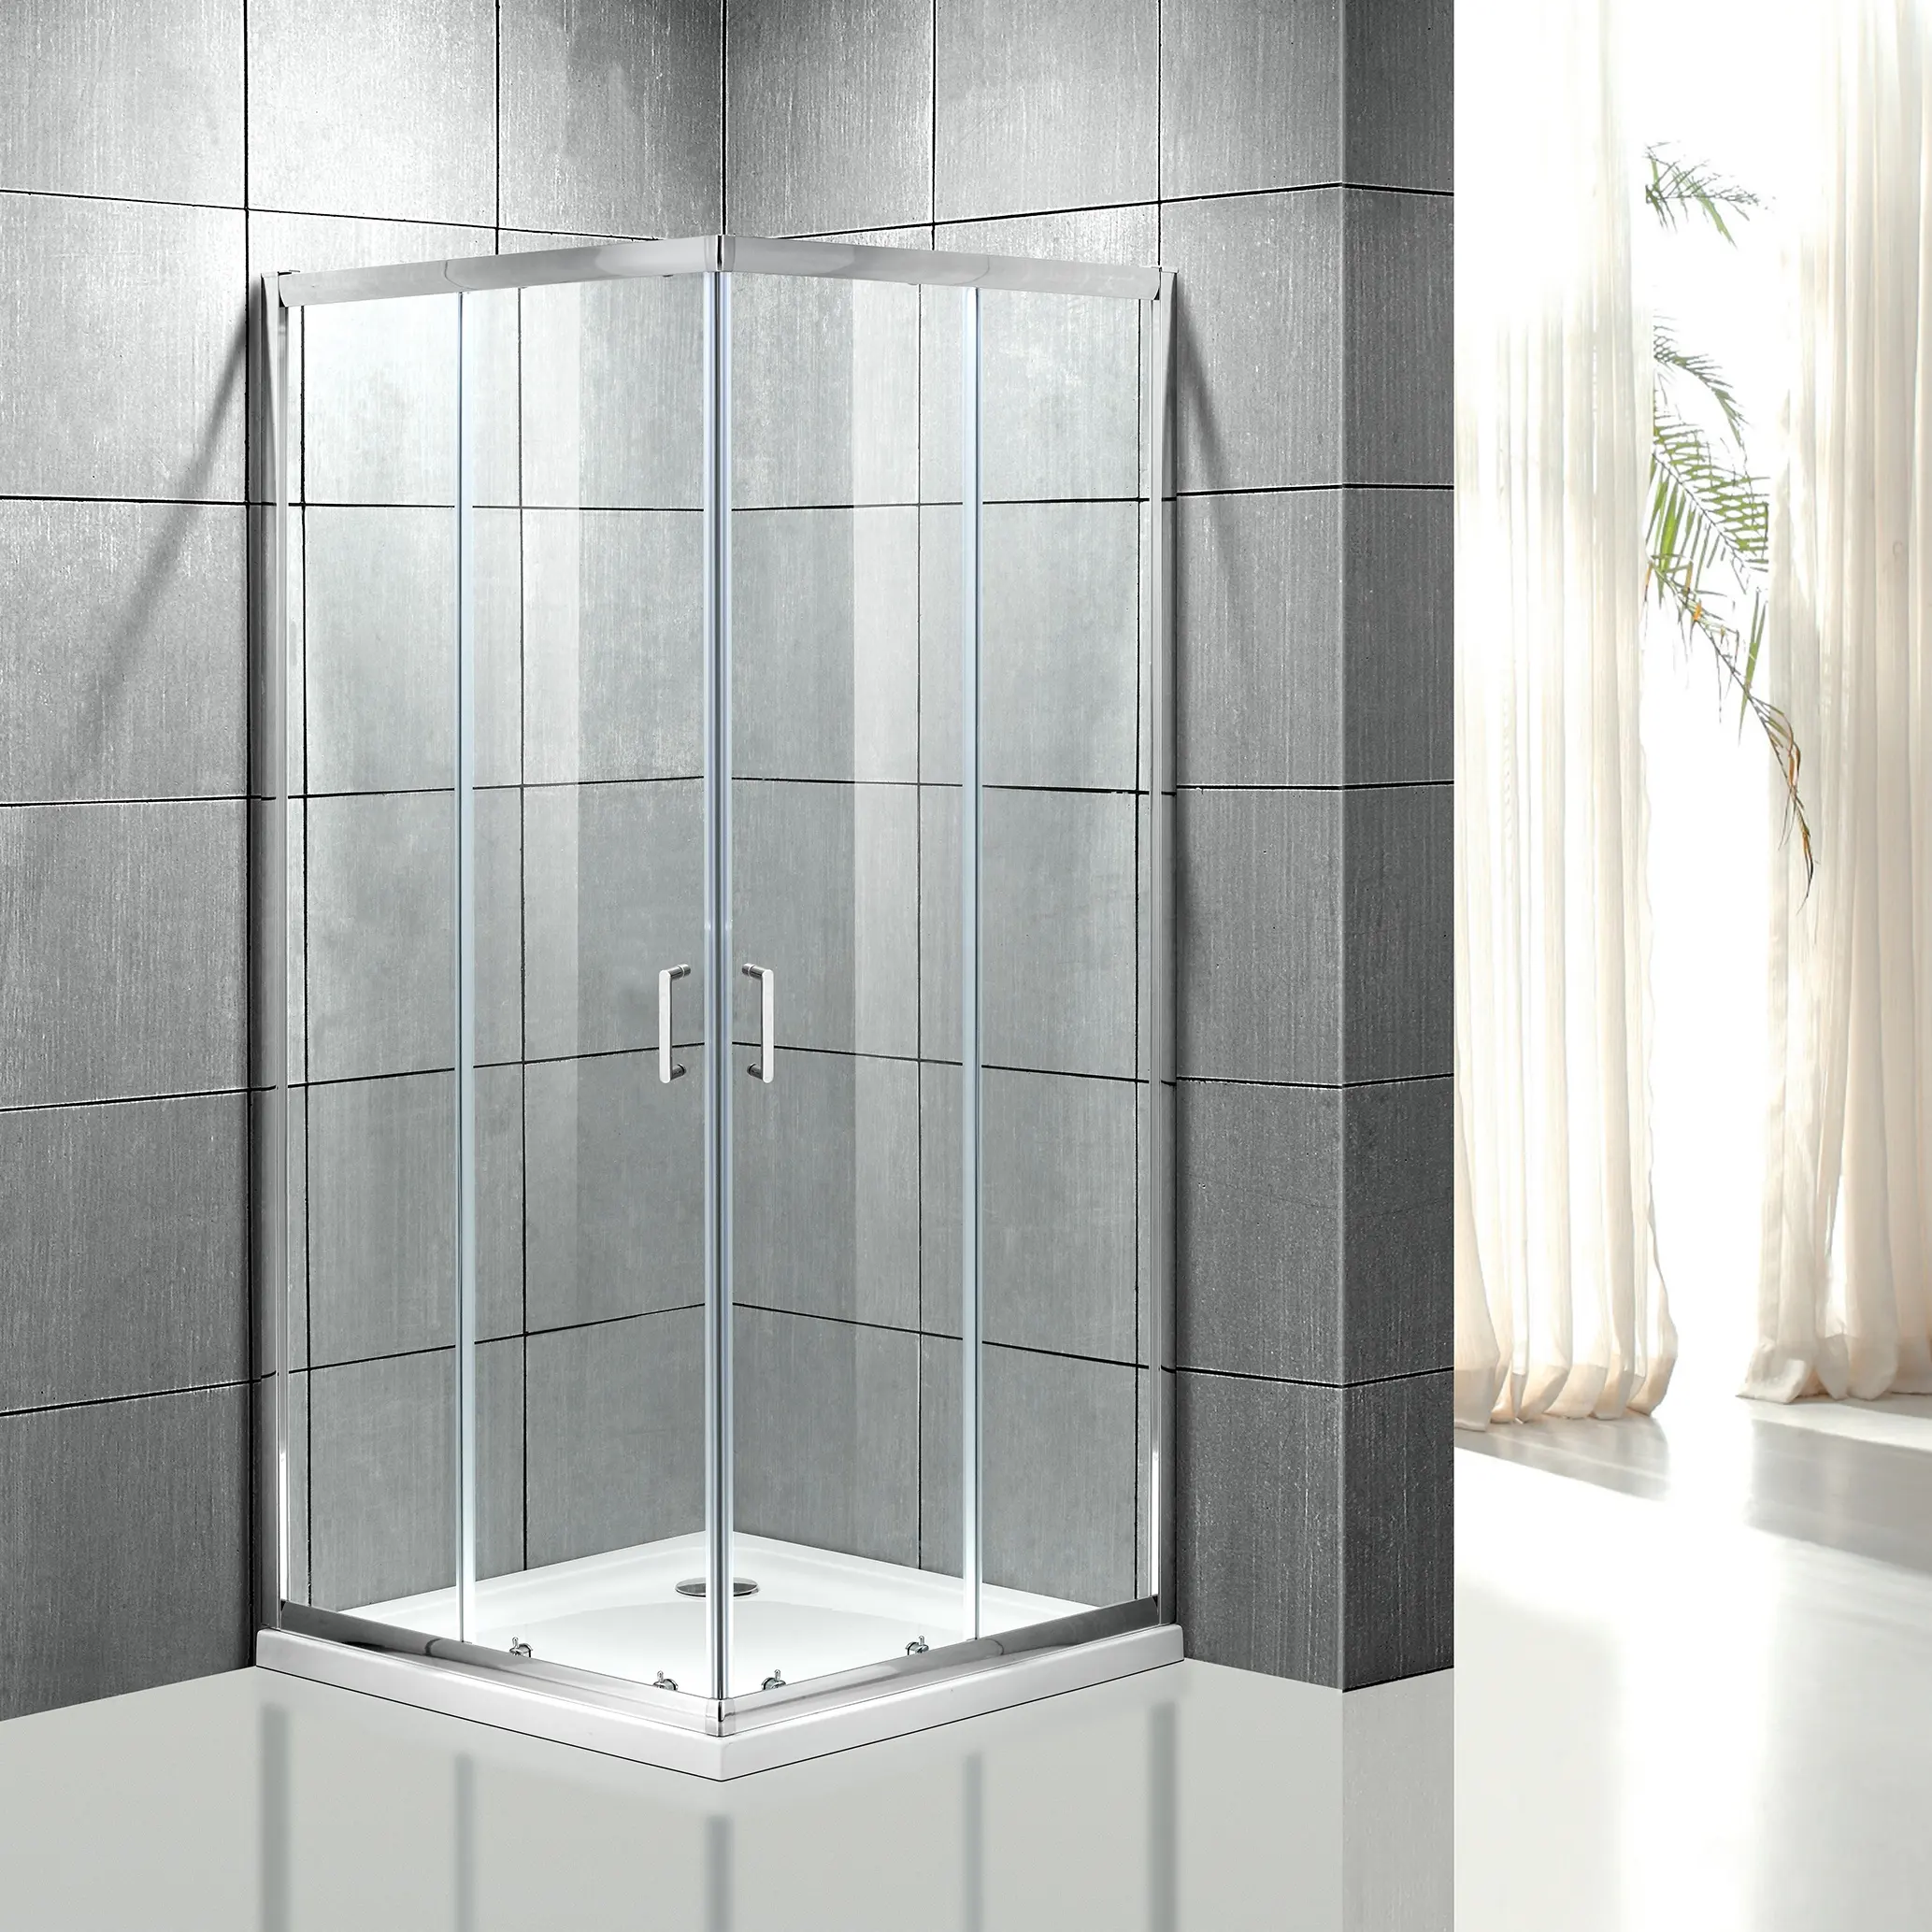 Cam salıncak sıkı bağlamak banyo drenaj kare buhar odası ve duş 4 kişi duş odası